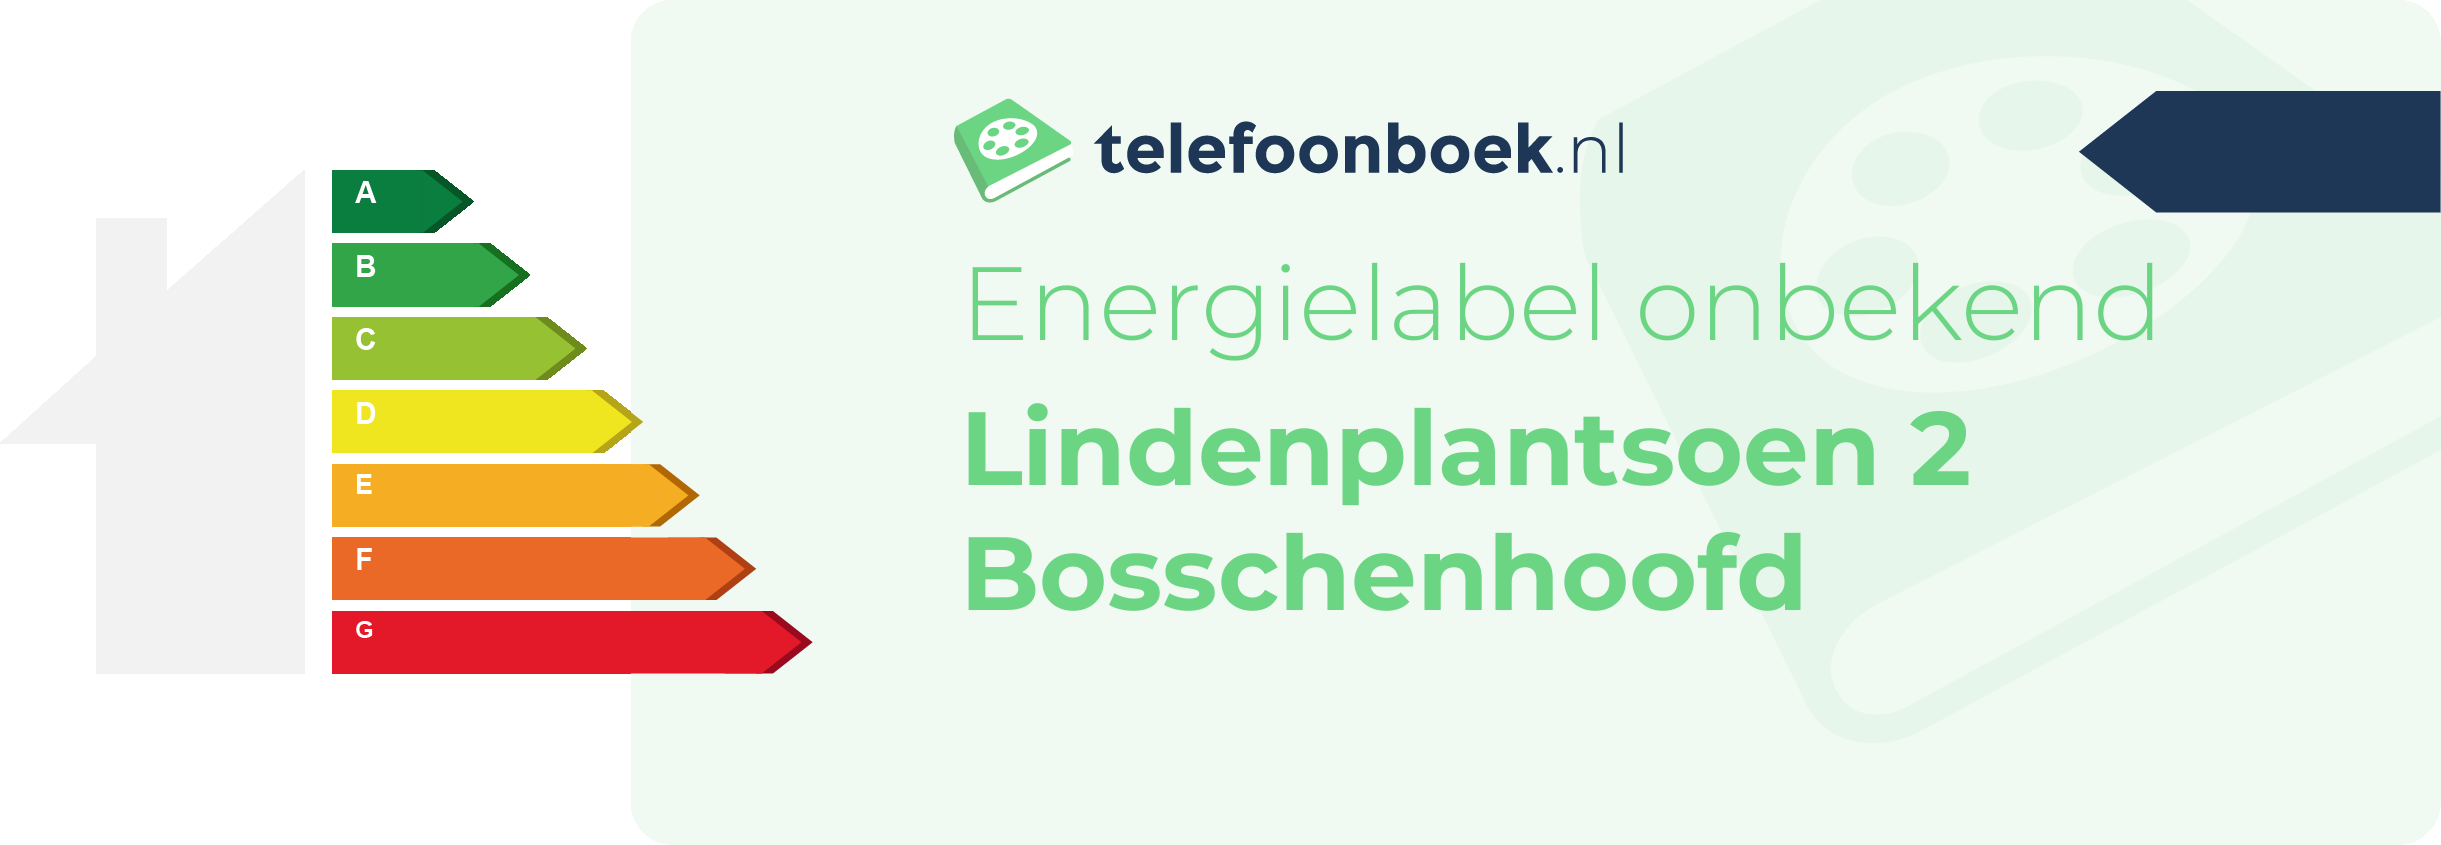 Energielabel Lindenplantsoen 2 Bosschenhoofd